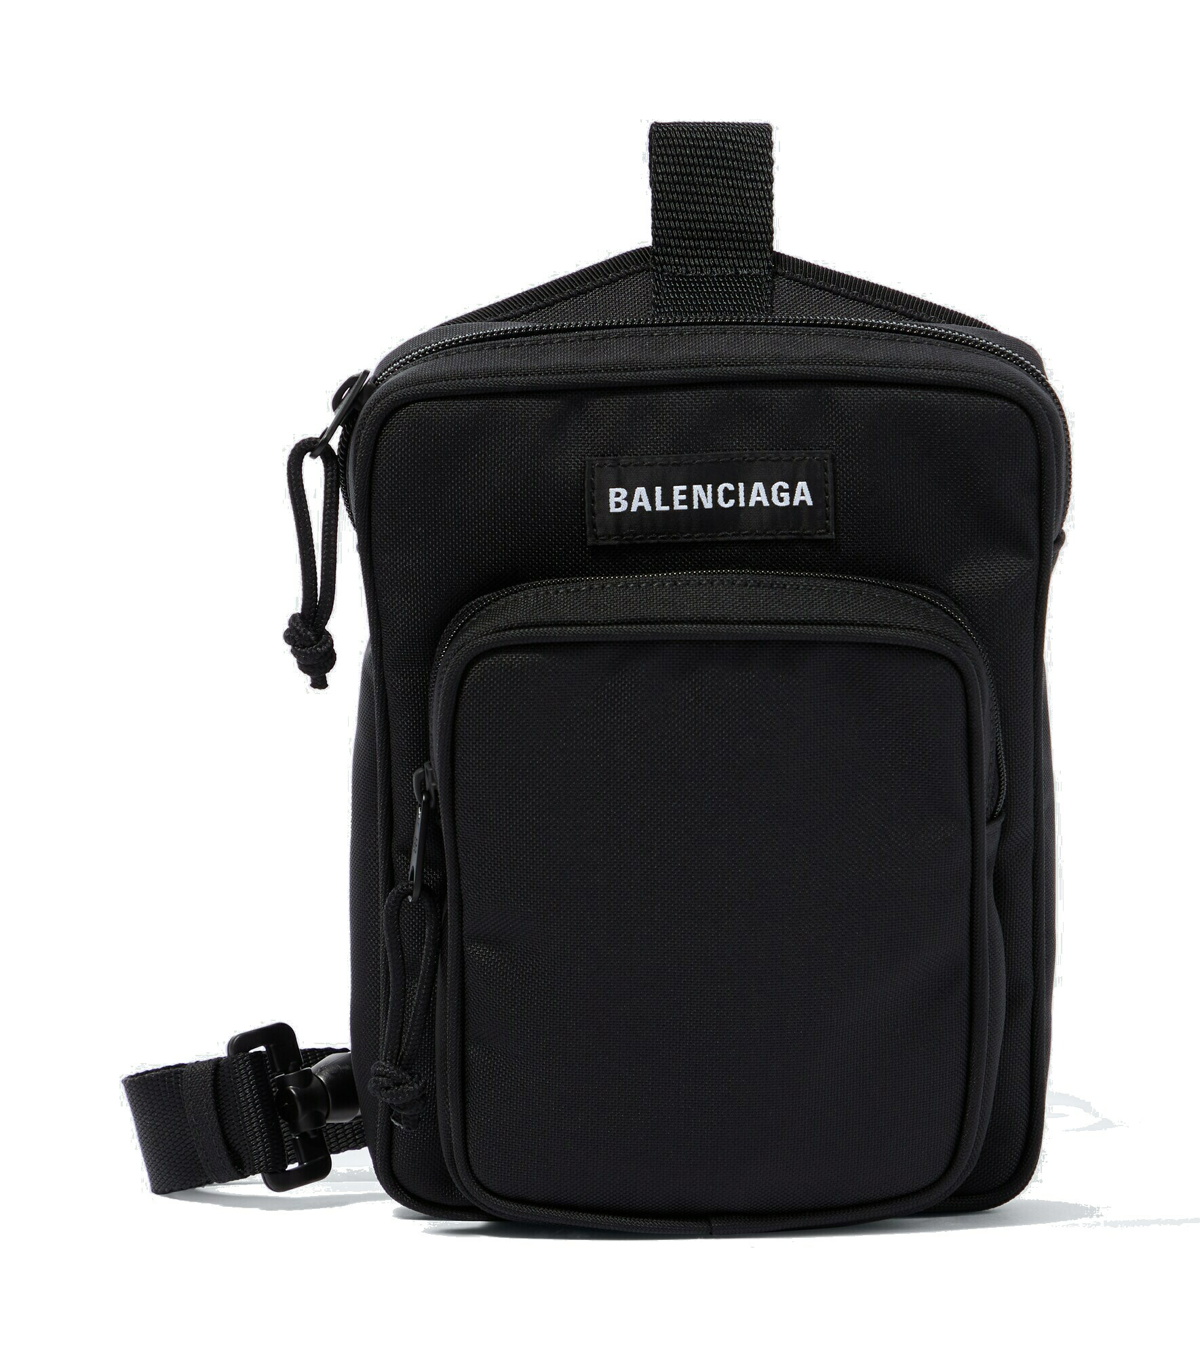 Balenciaga - Explorer crossbody bag Balenciaga